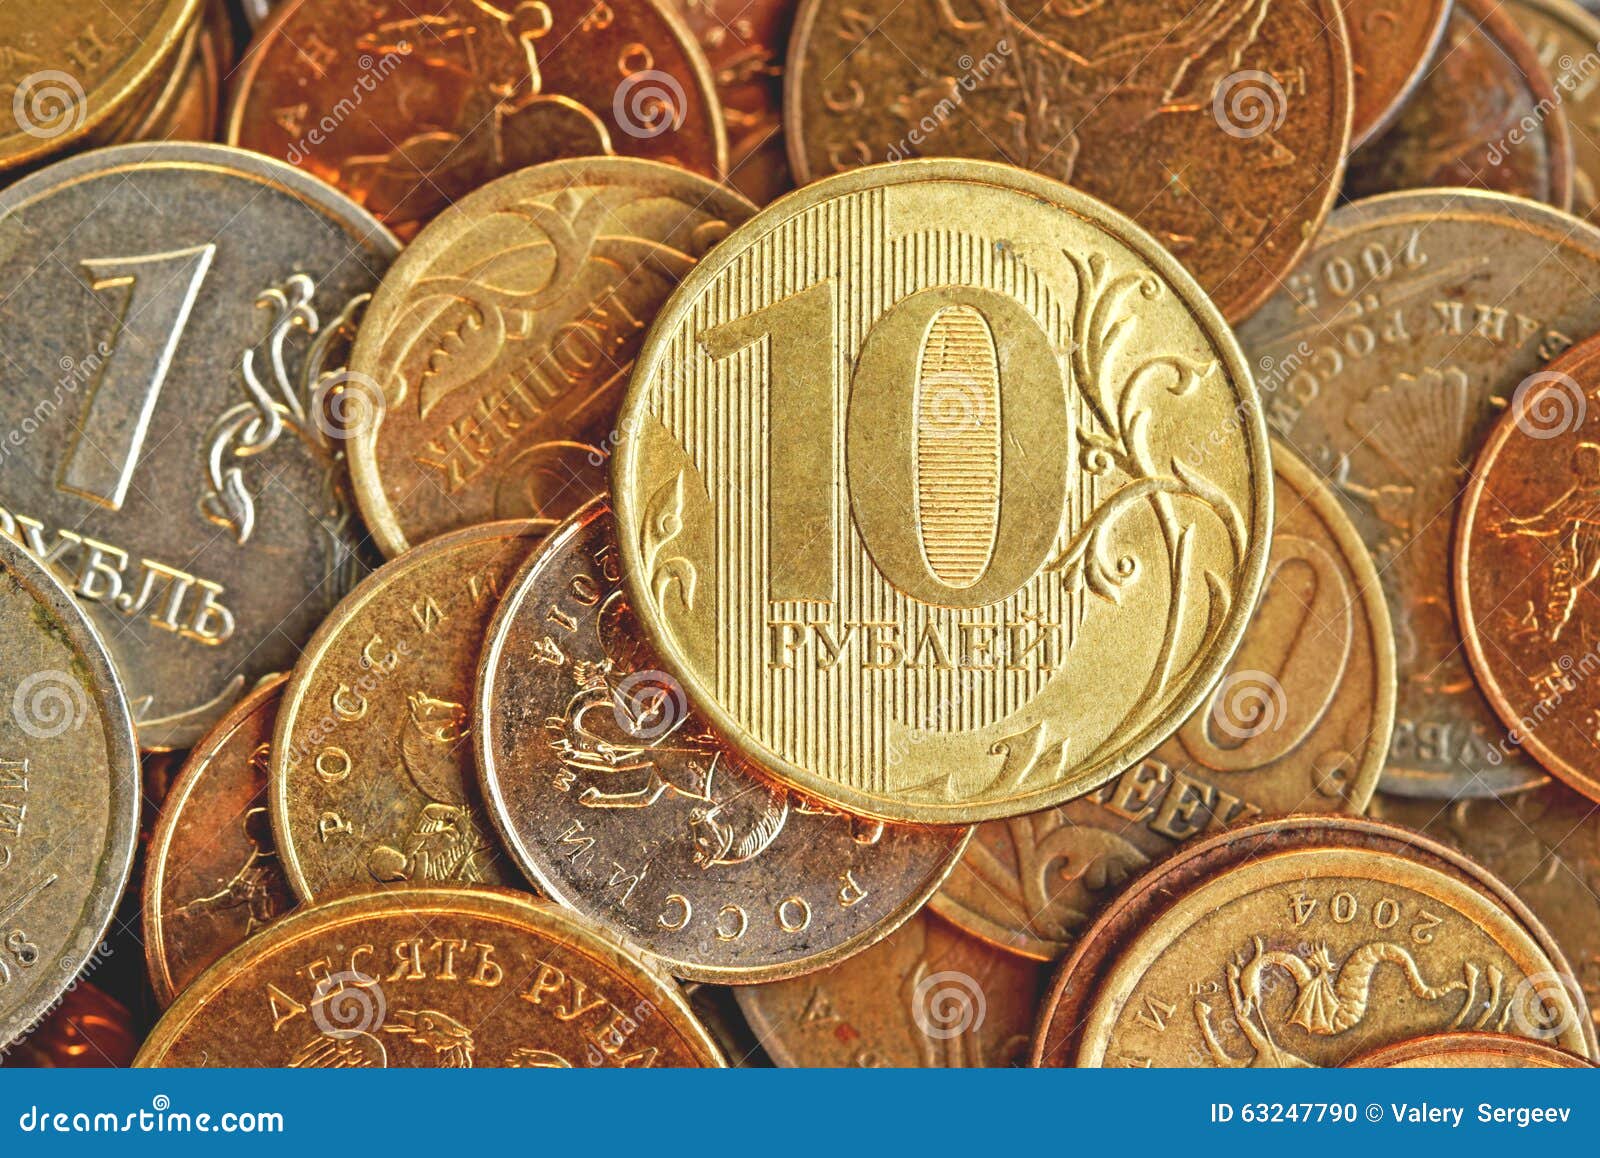 Банк рубил. Монеты картинки. Монеты 10 рублей много. Металлические деньги рубли. Бумажные и металлические деньги.